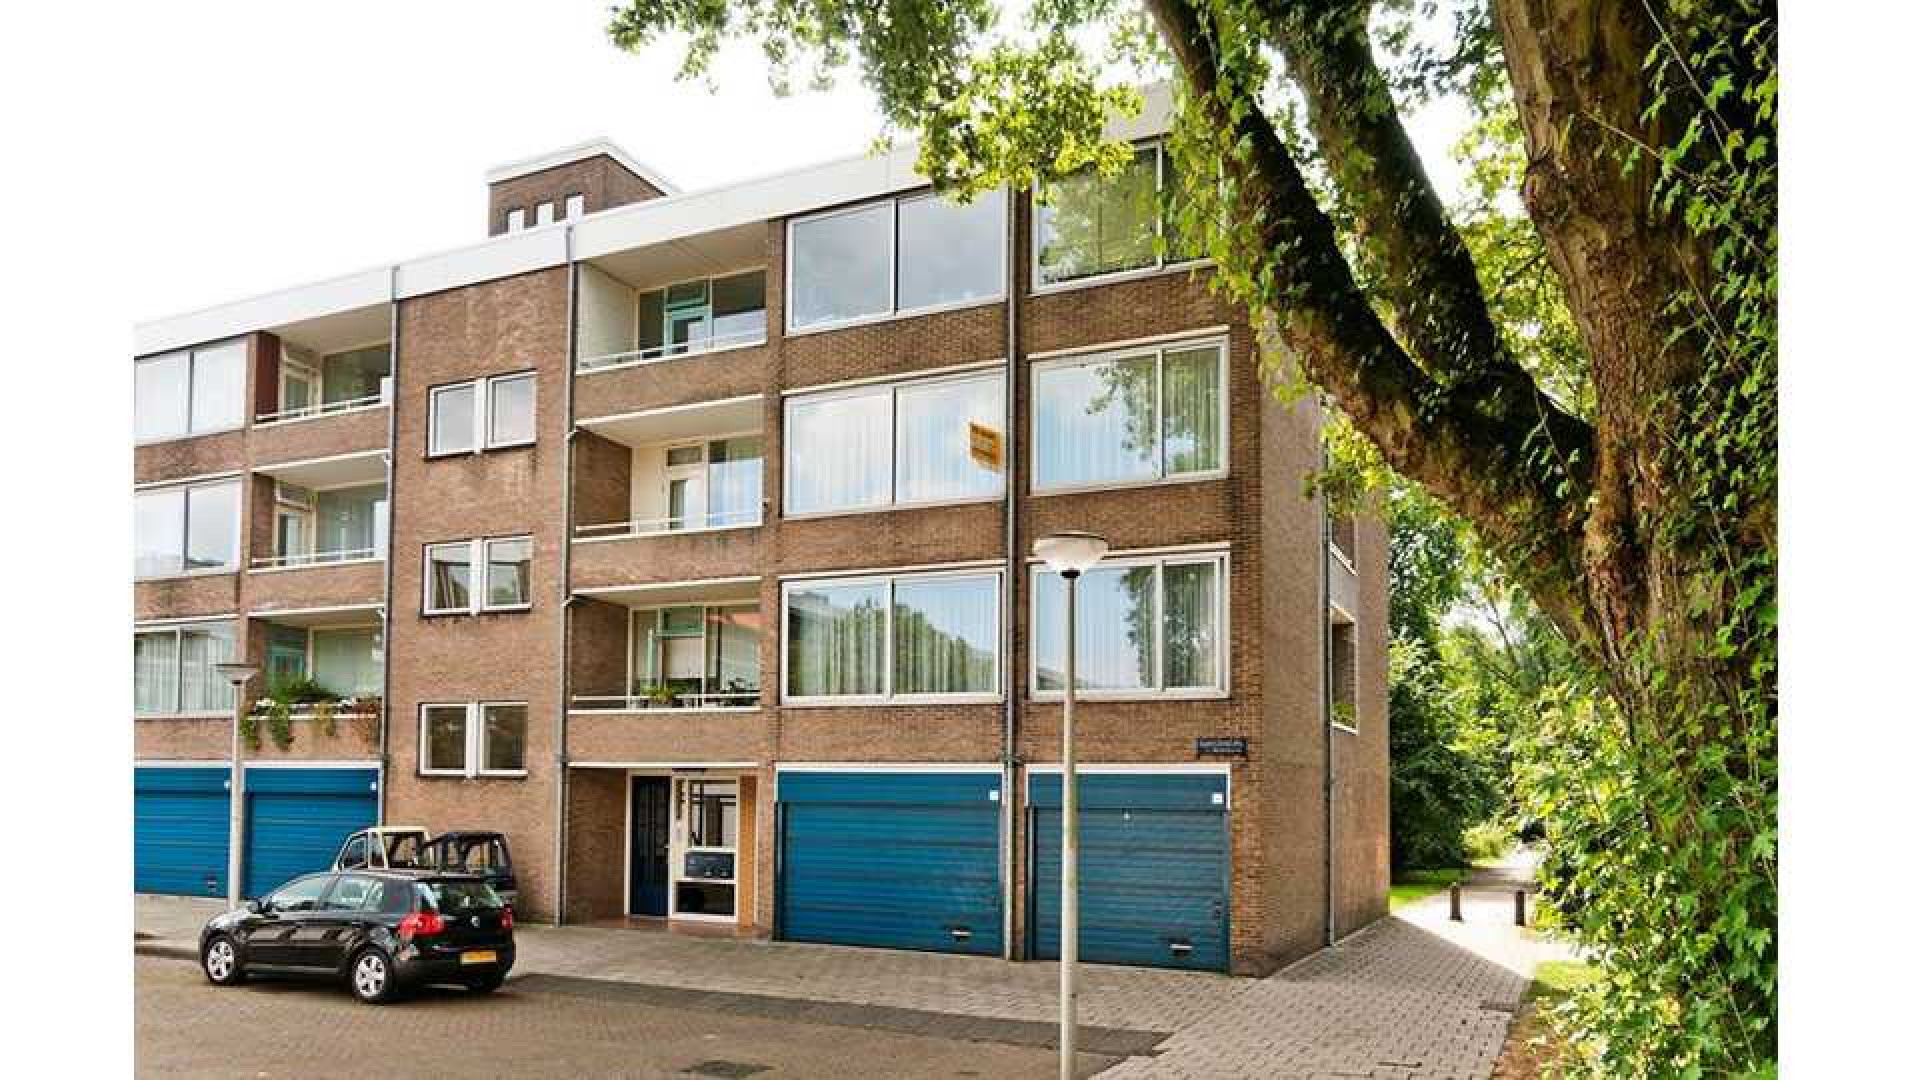 Loretta Schrijver koopt een appartement in Amsterdam. Zie foto's